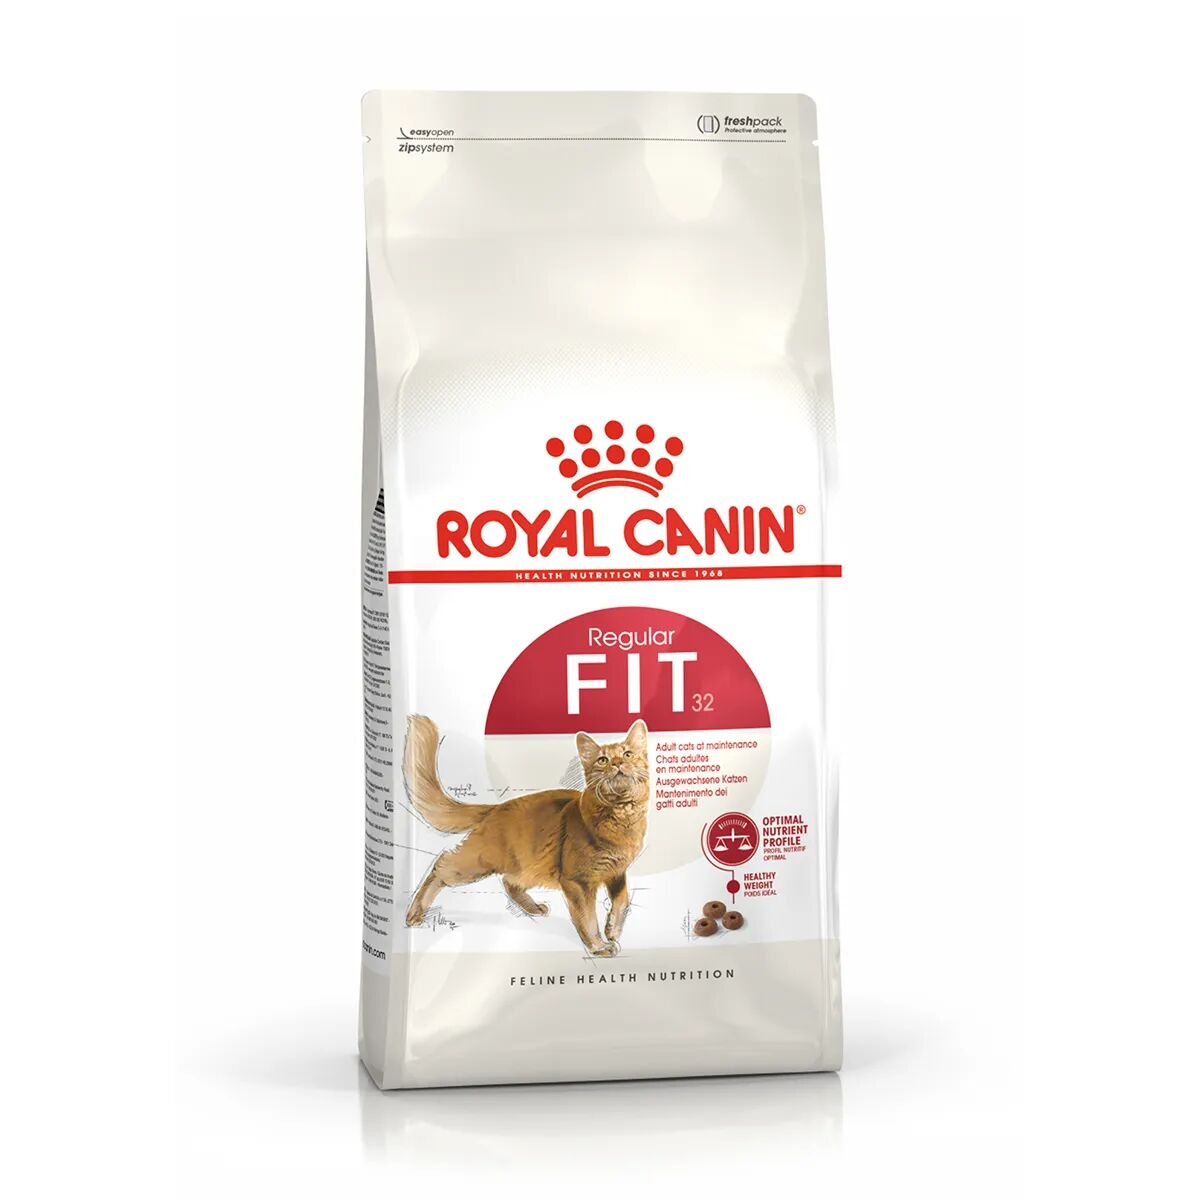 royal canin cat fit 32 alimento completo per gatti adulti di oltre 1 anno di età 4kg